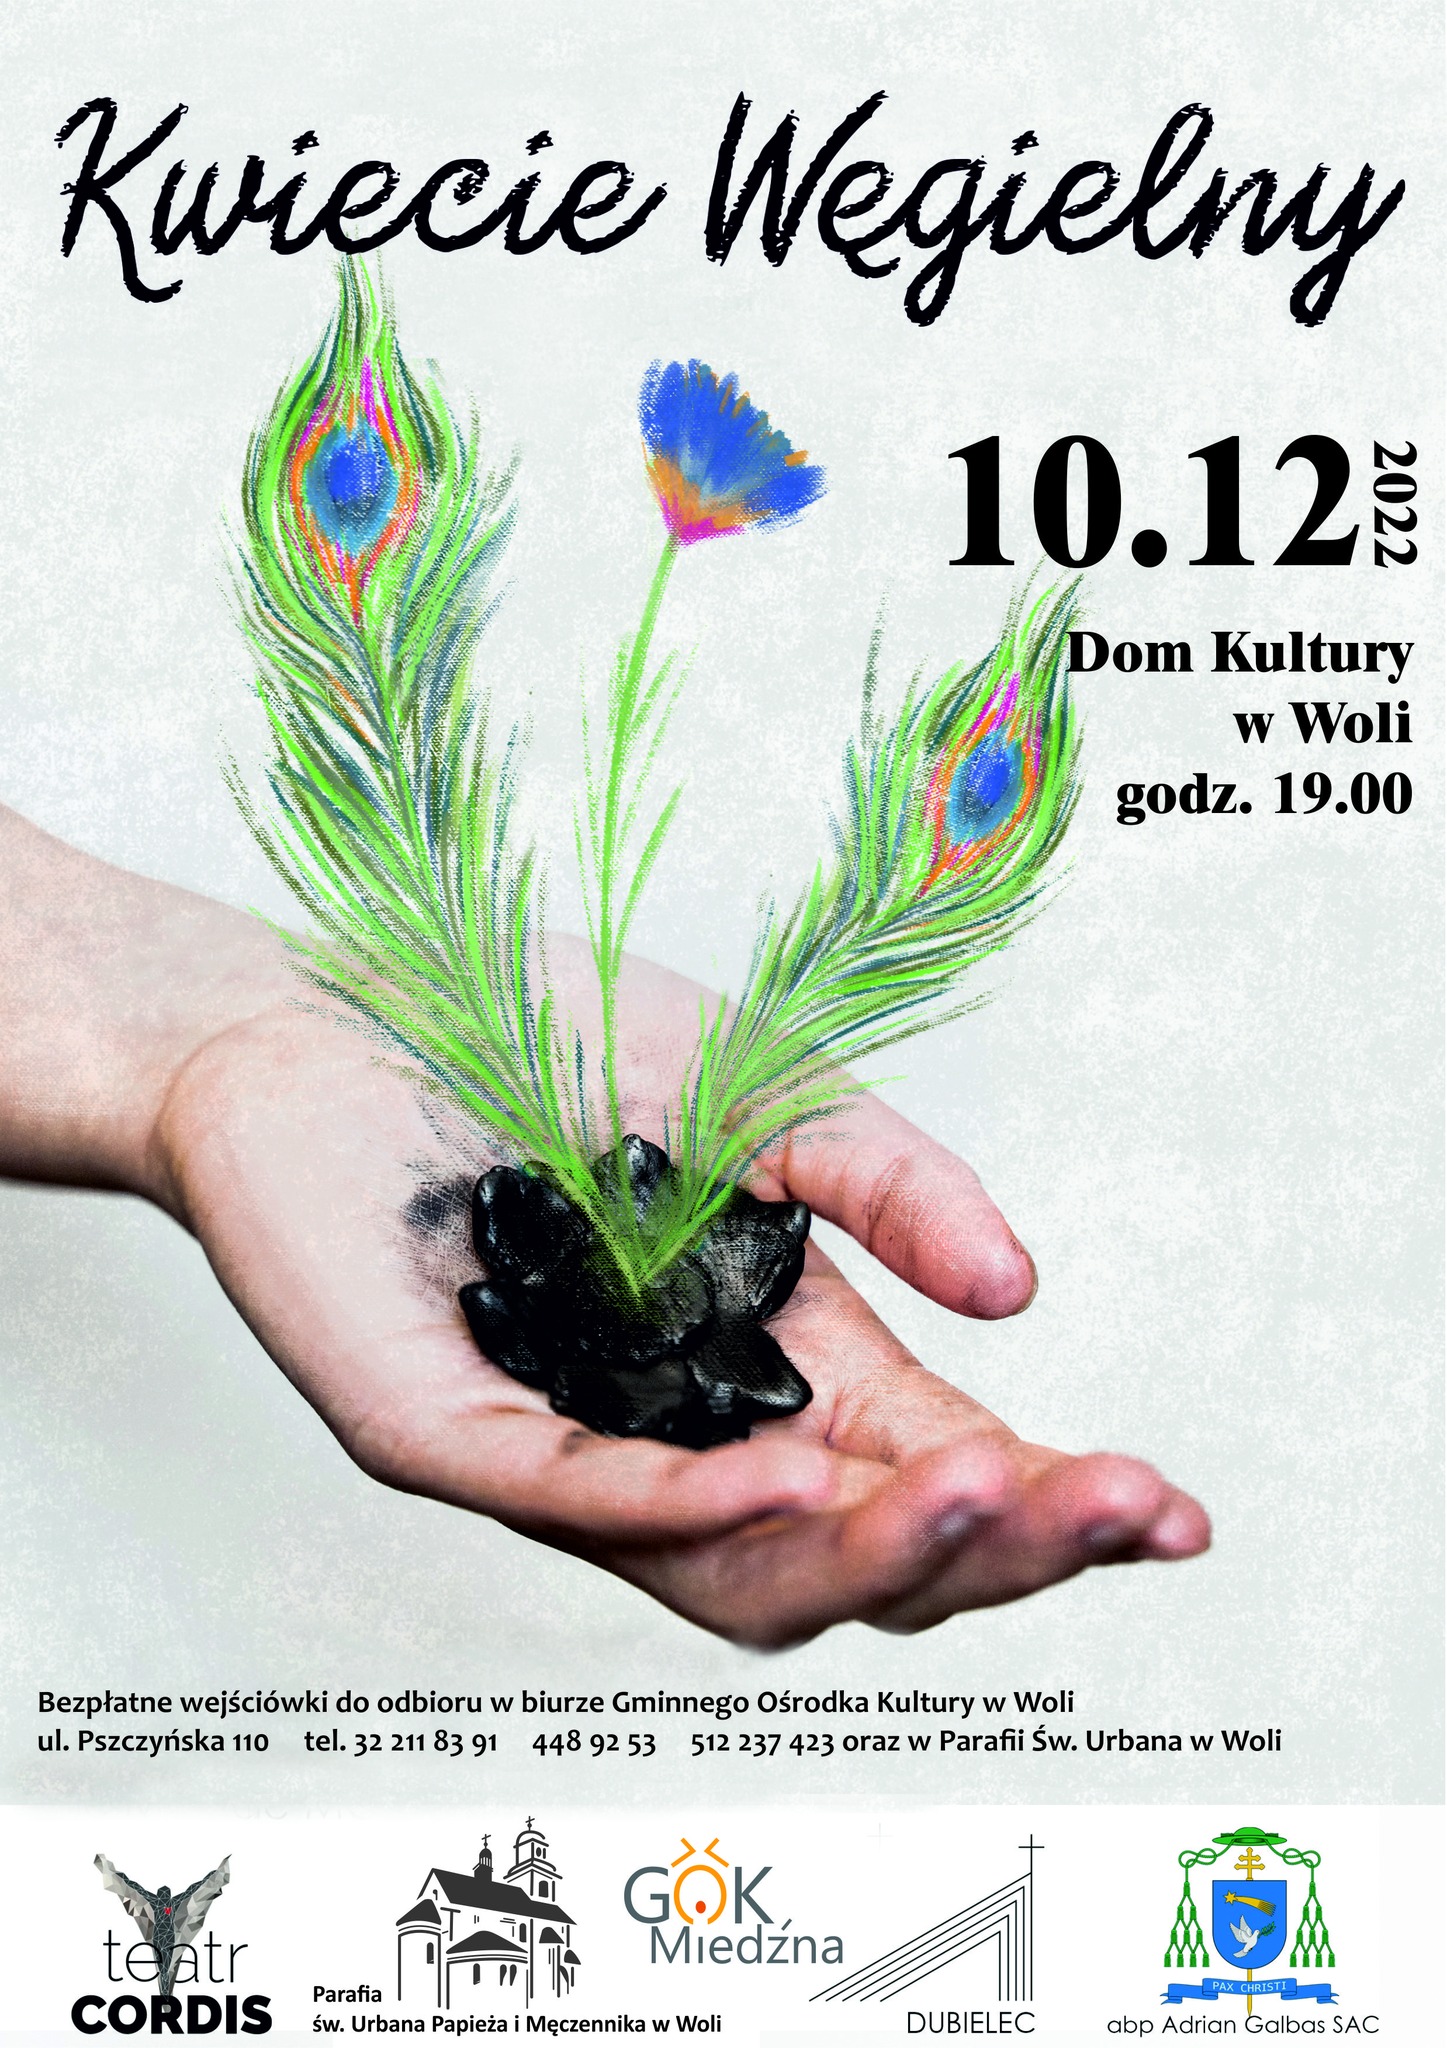 Plakat promujący spektakl tańca nowoczesnego " Kamień węgielny" dnia 10.12.2022 godz. 19:00 Dom Kultury w Woli